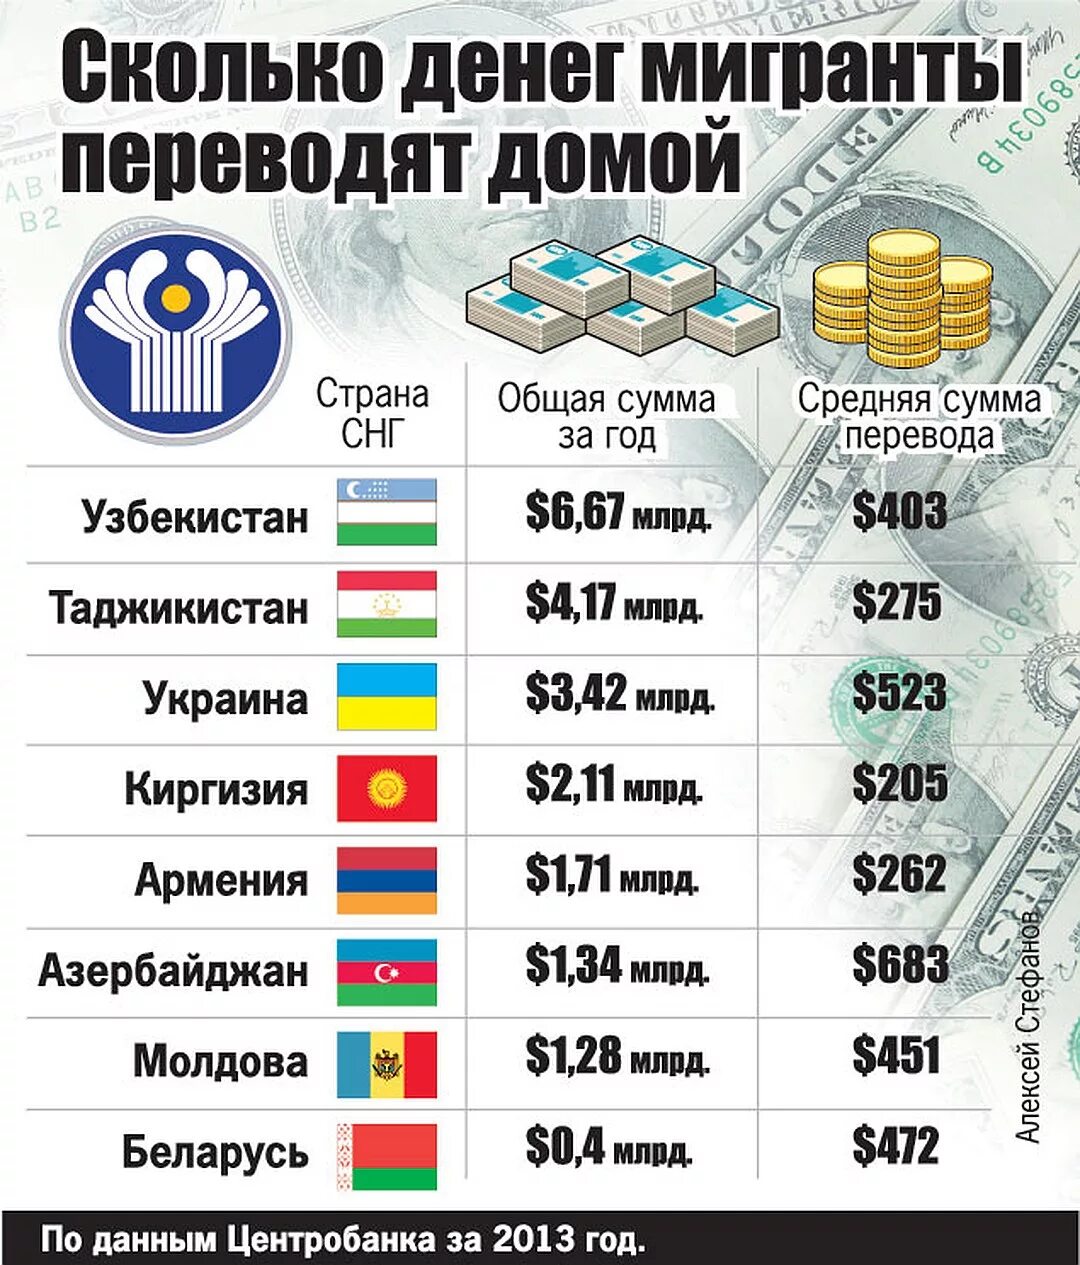 Можно ли вывозить доллары. Количество денег в странах. Сколько денег в России. Сколько денег по странам. Сколько в Росси денеиг.